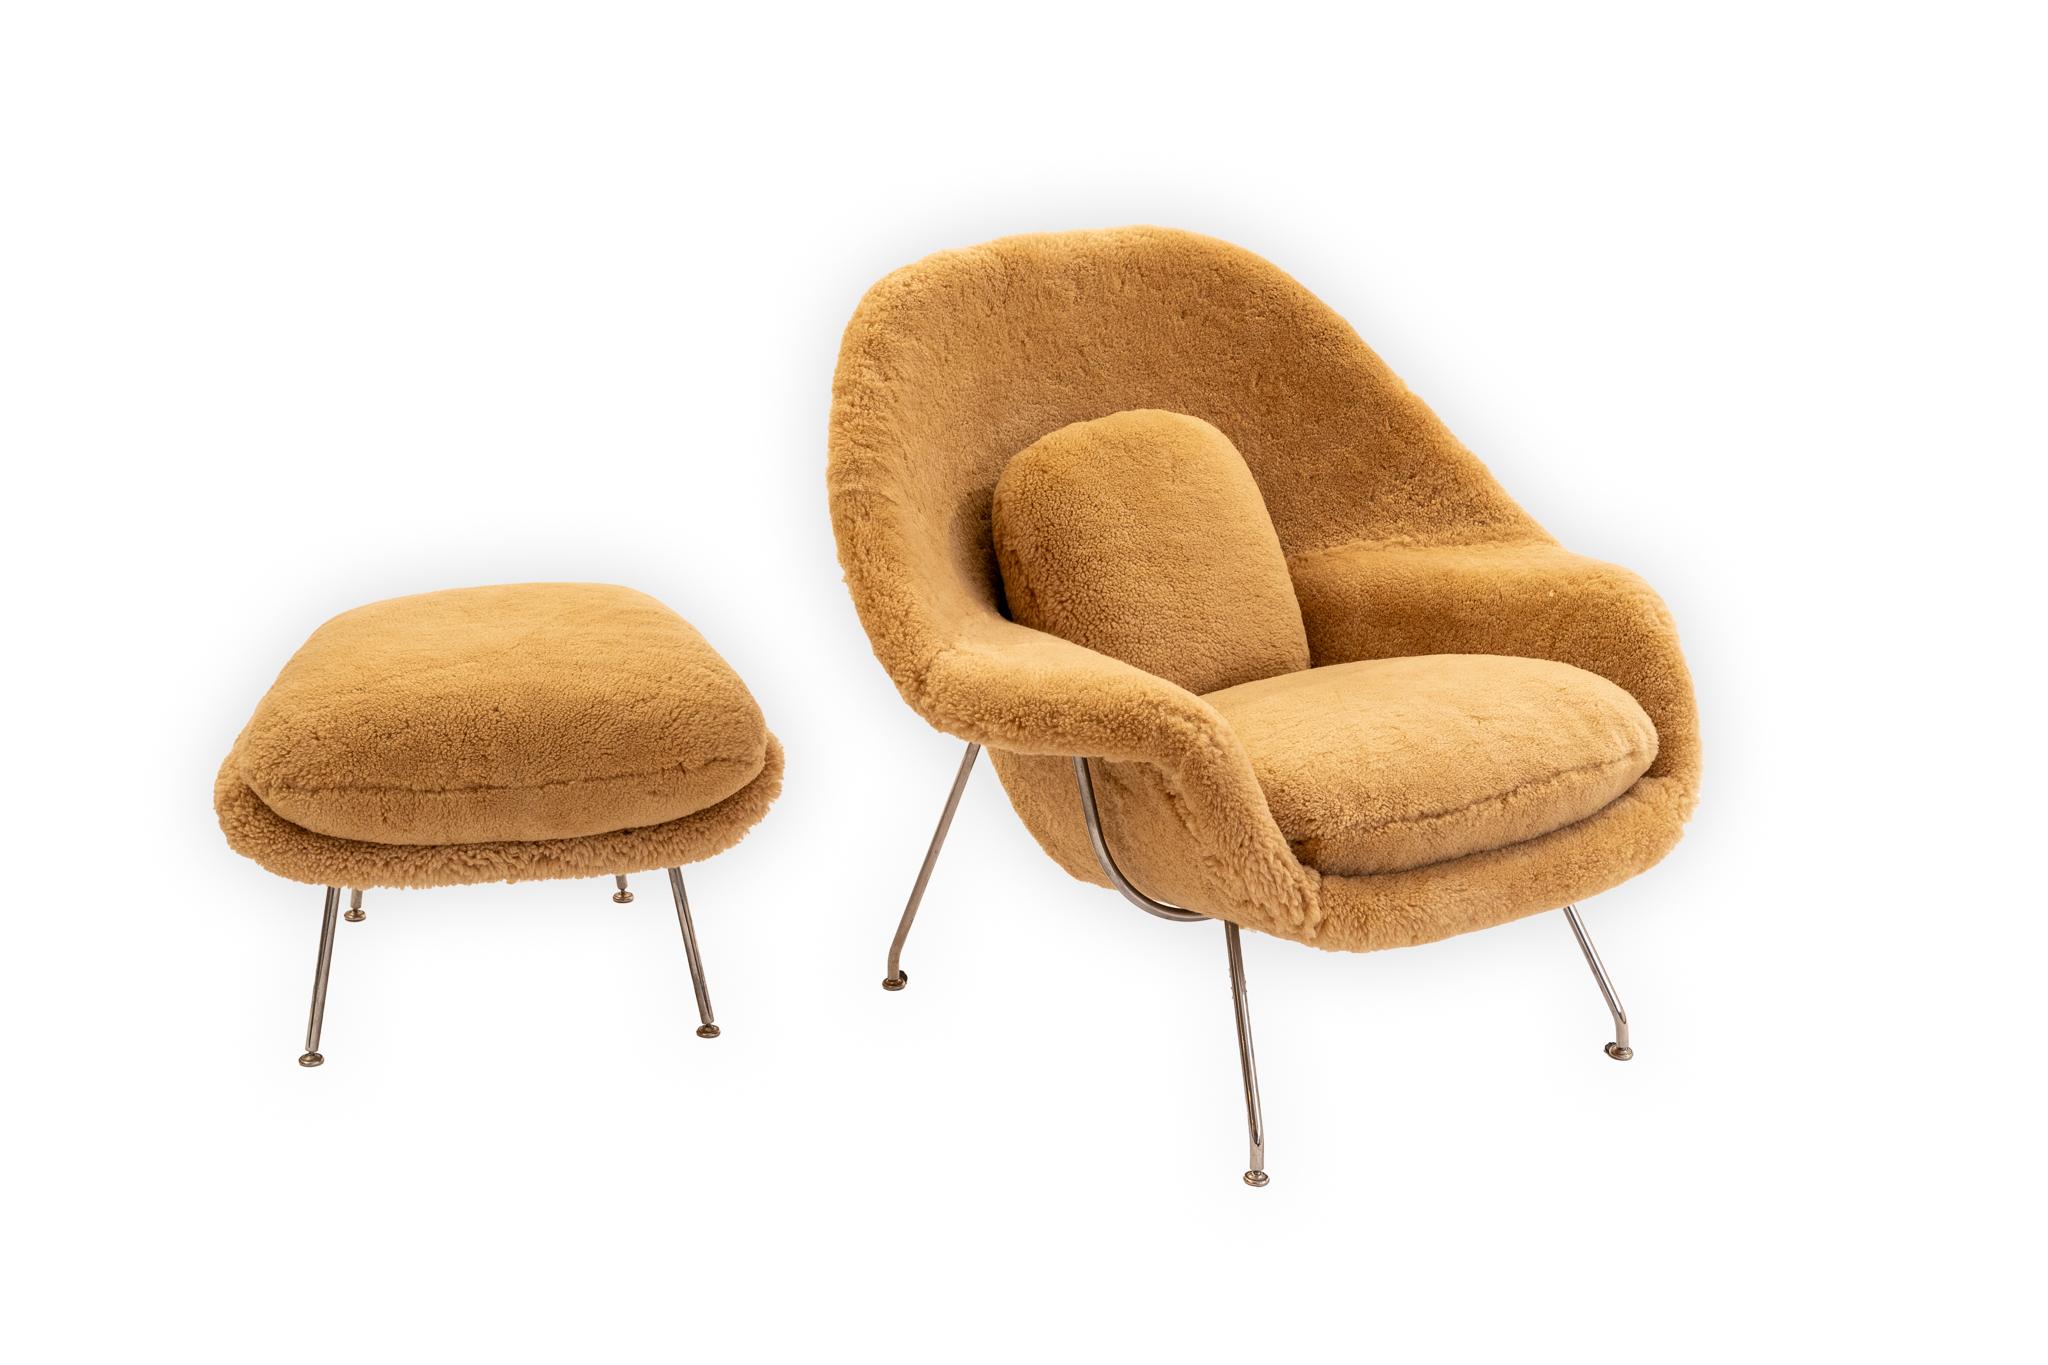 Détendez-vous et relaxez-vous dans cet ensemble chaise et ottoman Womb d'Eero Saarinen, d'un confort exceptionnel. La chaise est accompagnée d'un ottoman, tous deux entièrement retapissés en peau de mouton néo-zélandaise de haute qualité.